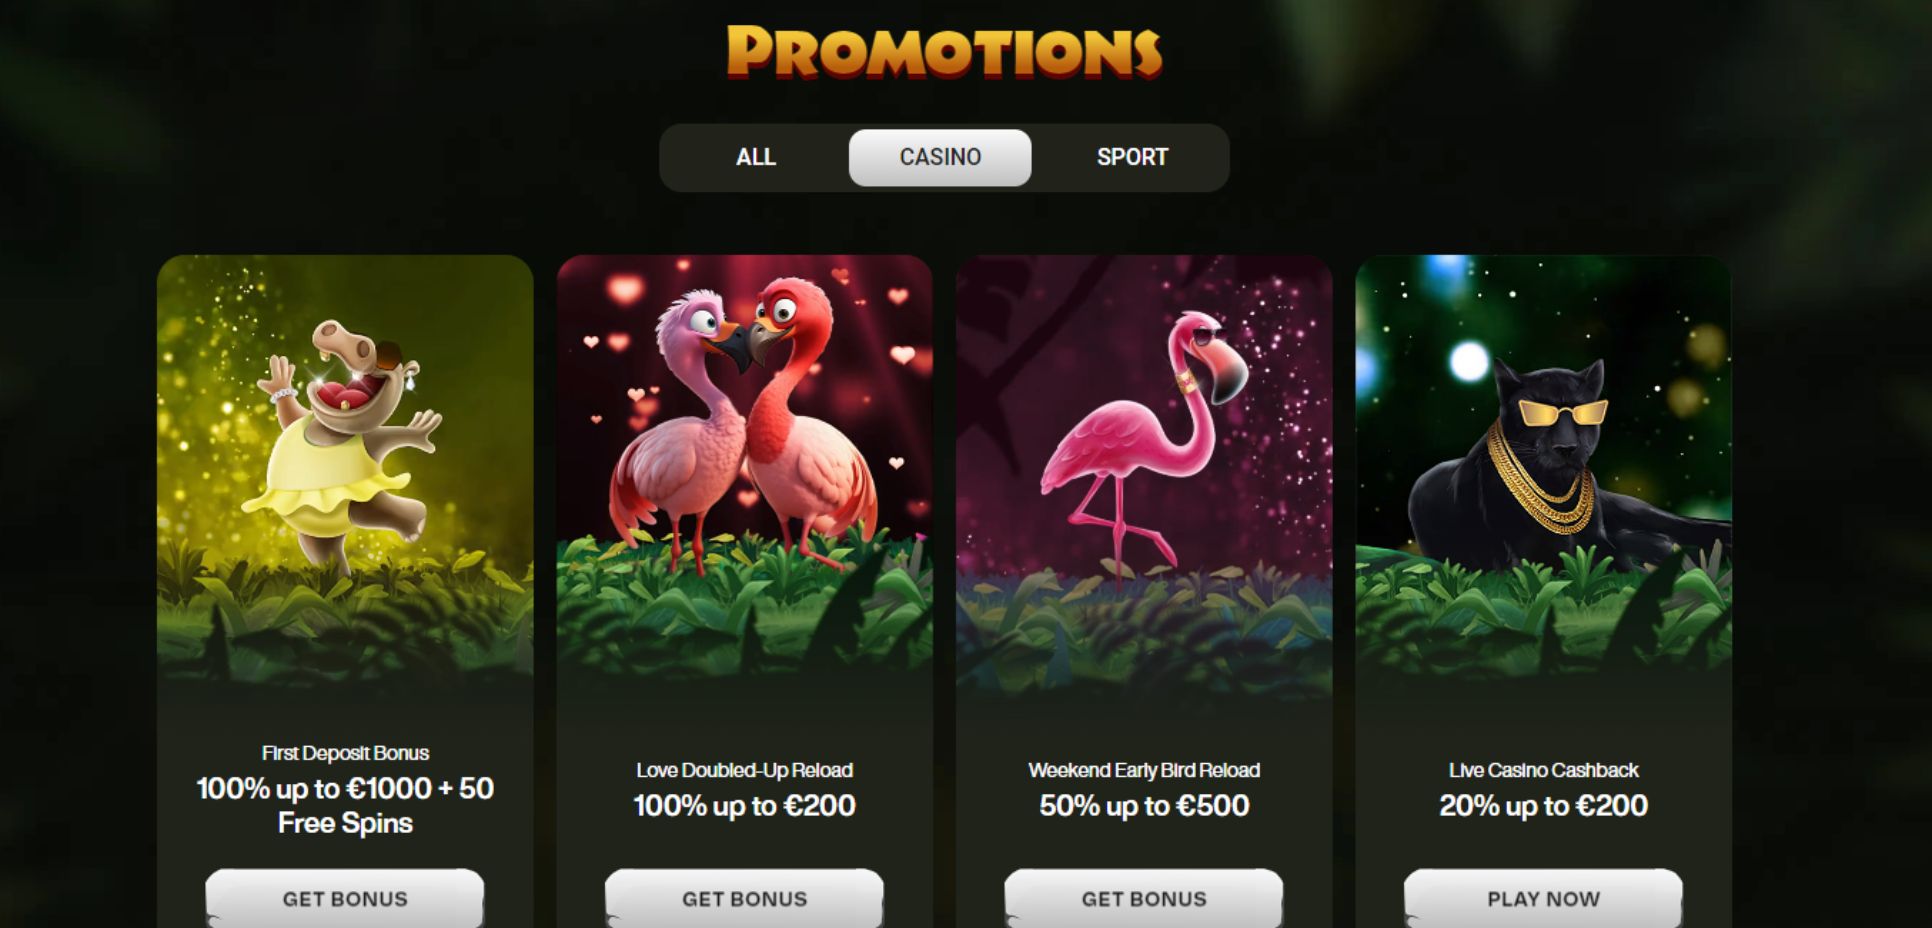 Cashwin Casino Promotions Page